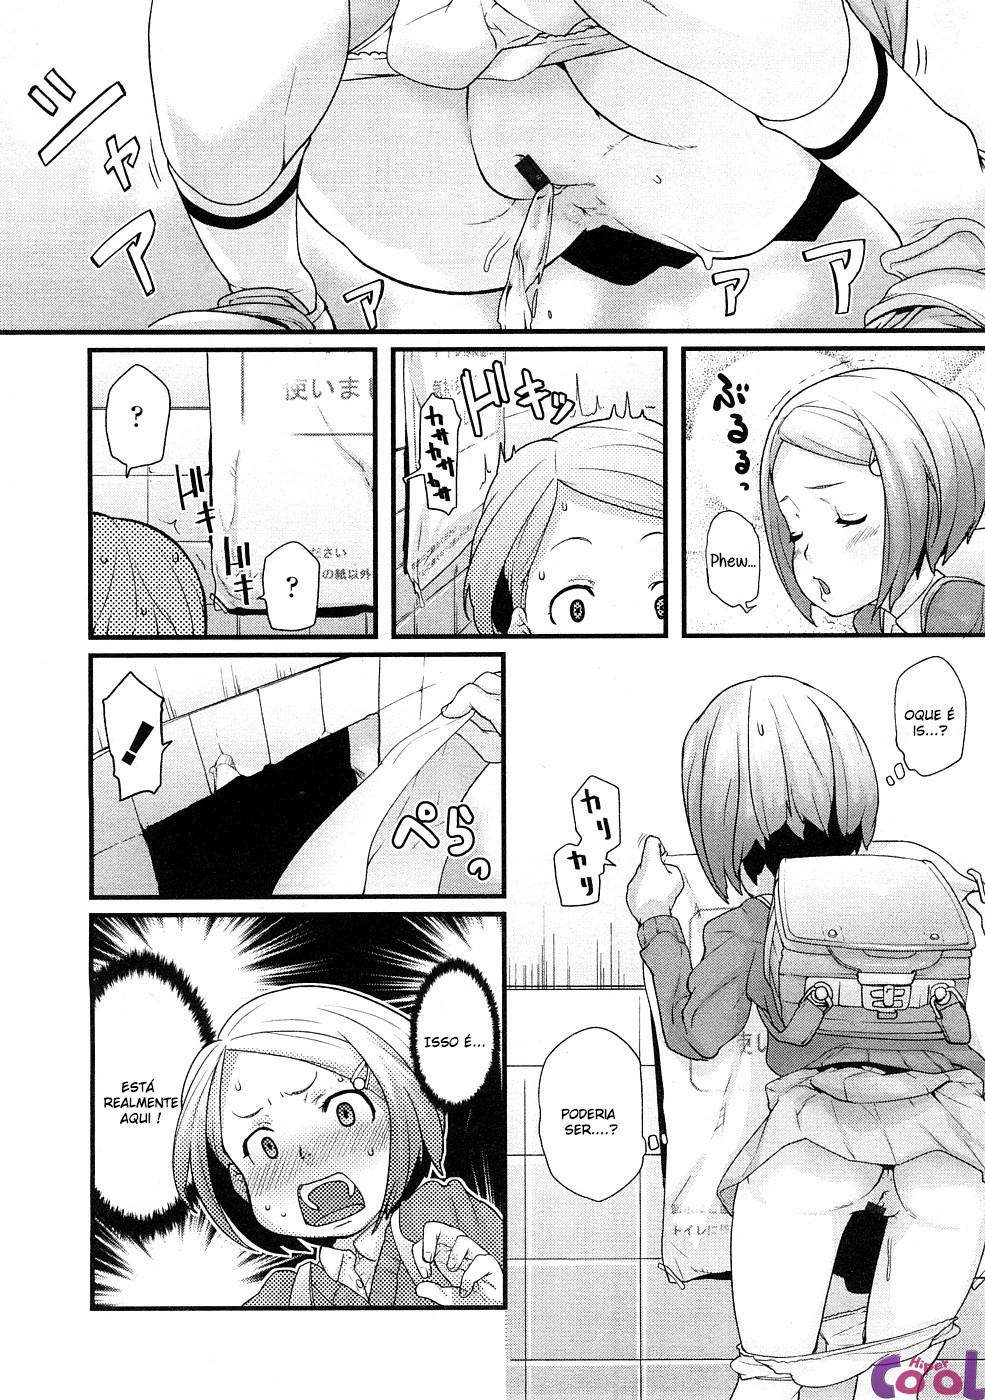 ana-no-toriko-chapter-01-page-04.jpg